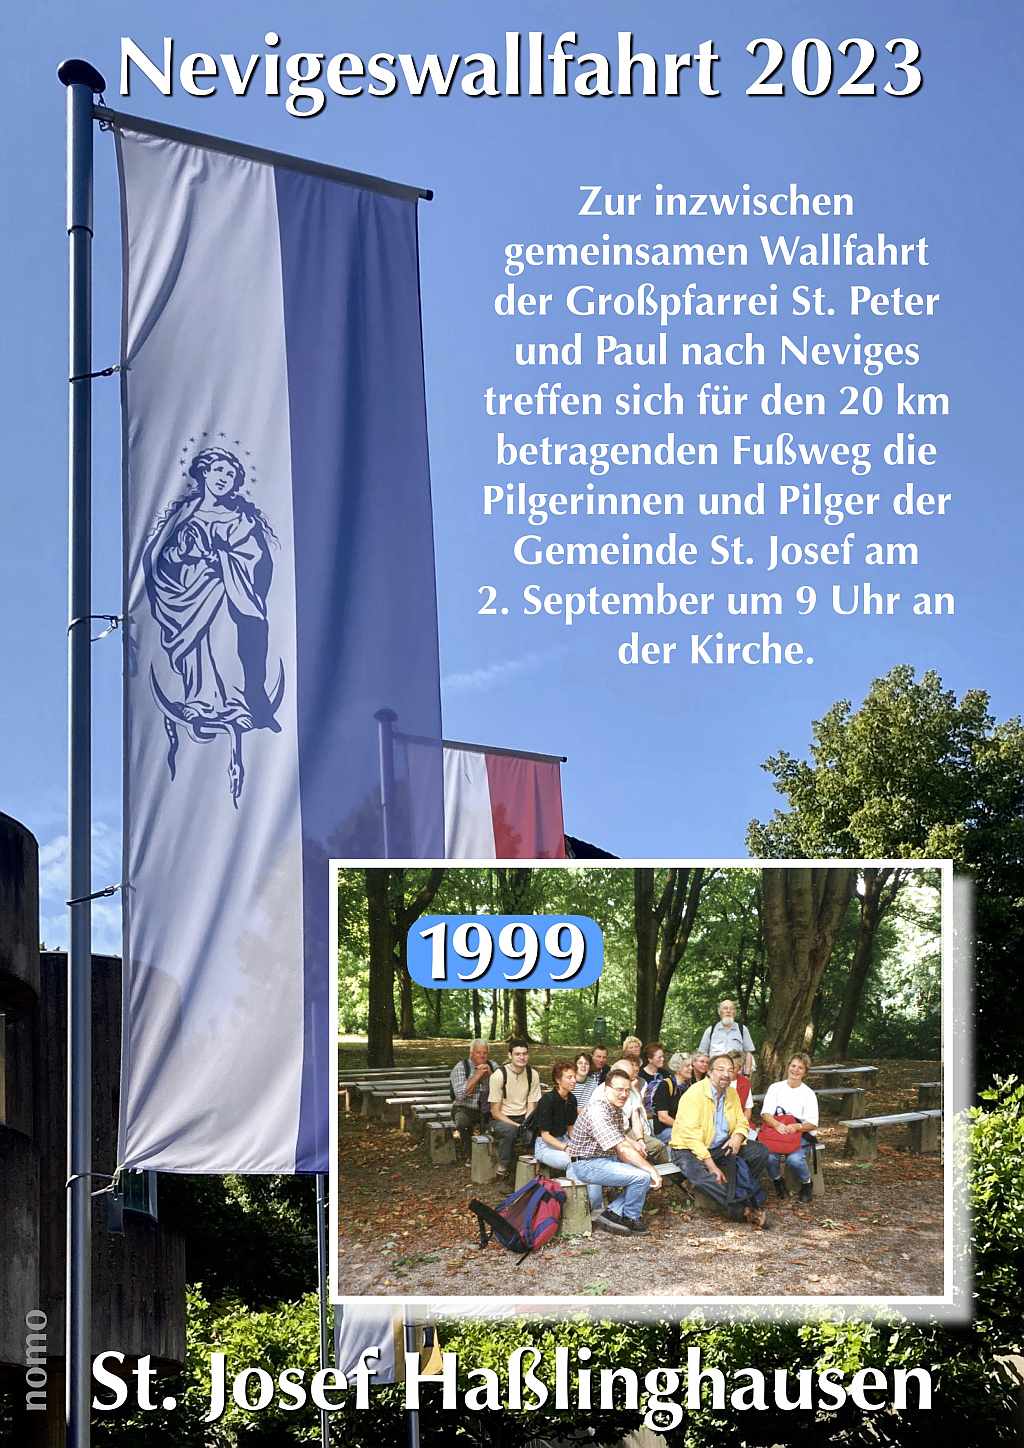 Einladung mit Erinnerungsfoto von 1999 auf dem Marienberg in Neviges, Foto-Collage: N. Motz